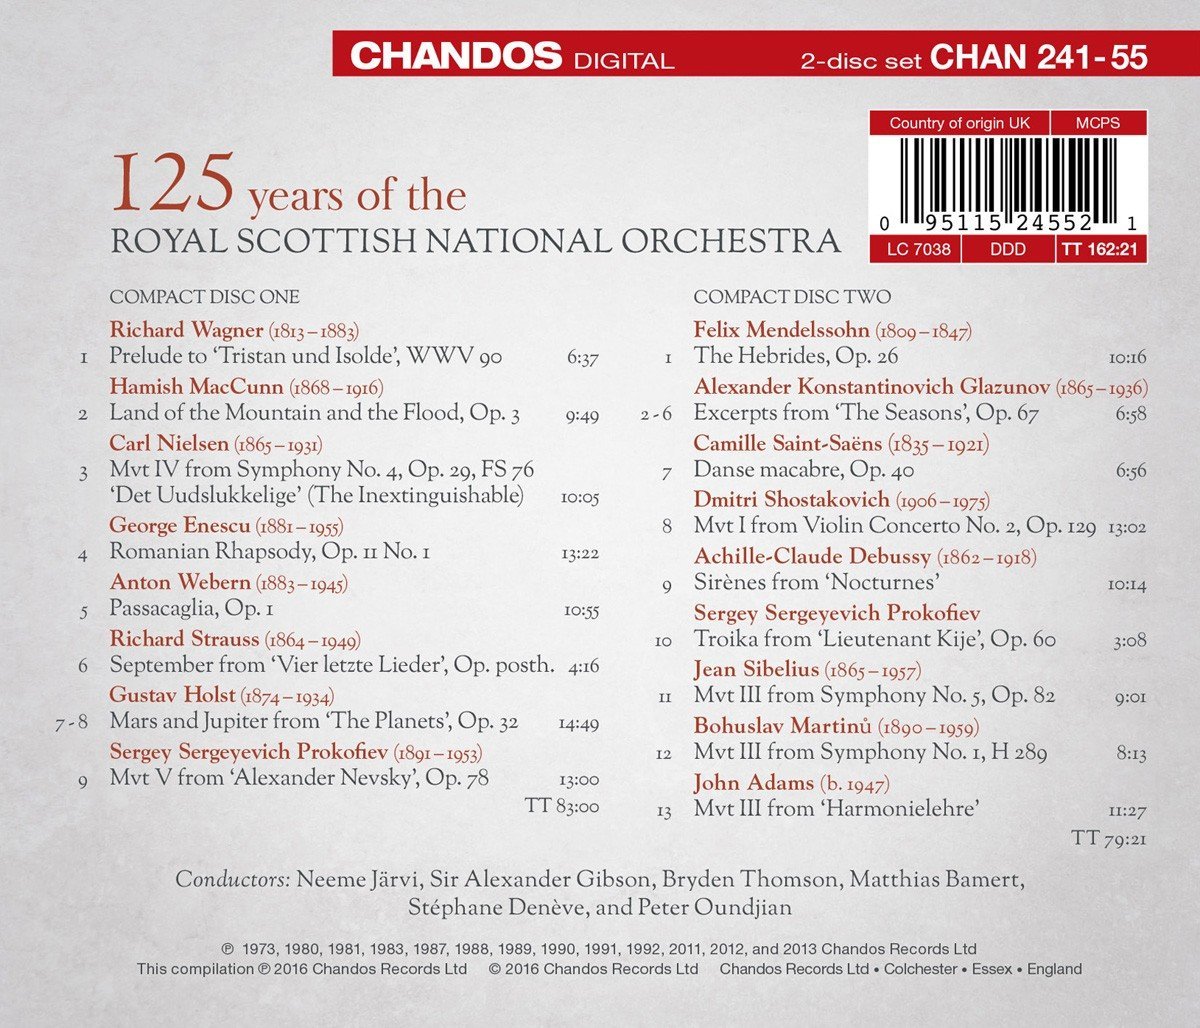 로얄 스코티쉬 내셔널 오케스트라 창립 125주년 기념 앨범 (125 Years of the Royal Scottish National Orchestra)